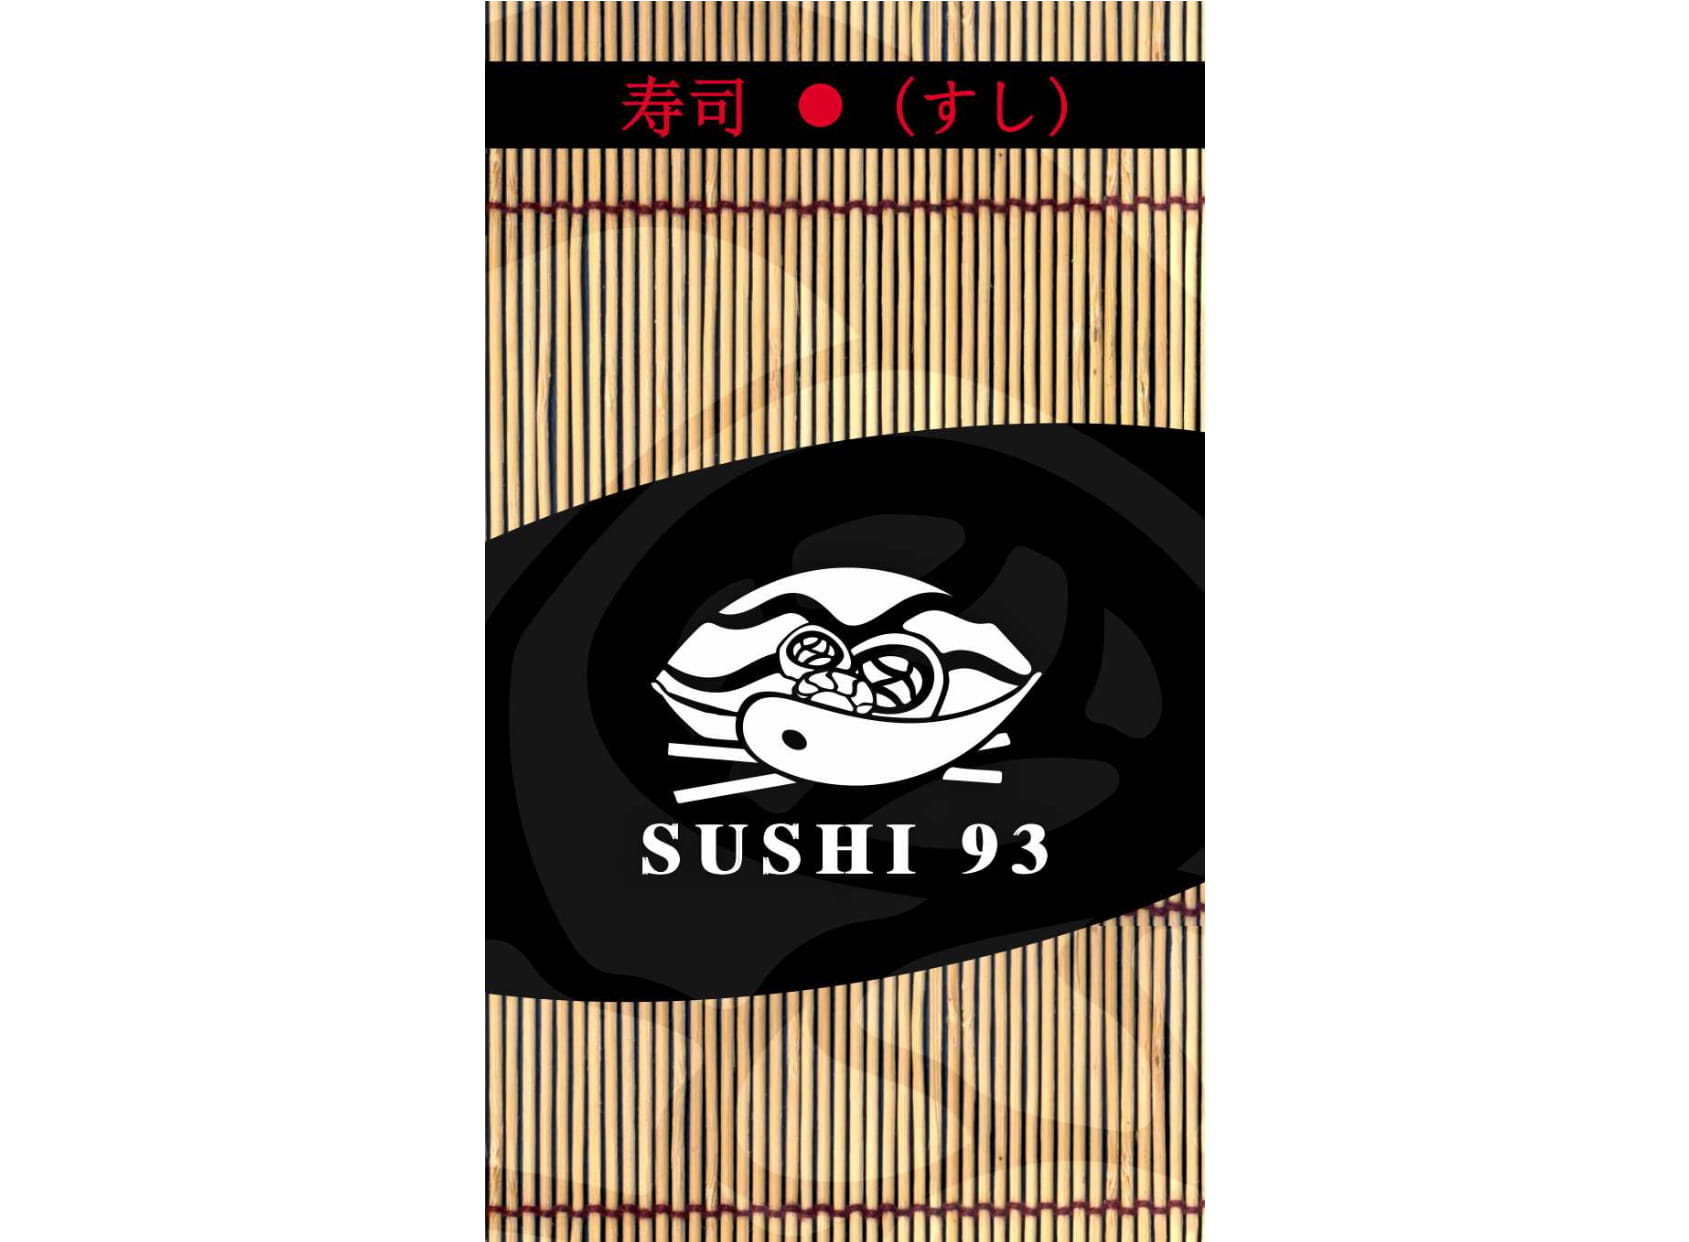 Sushi93